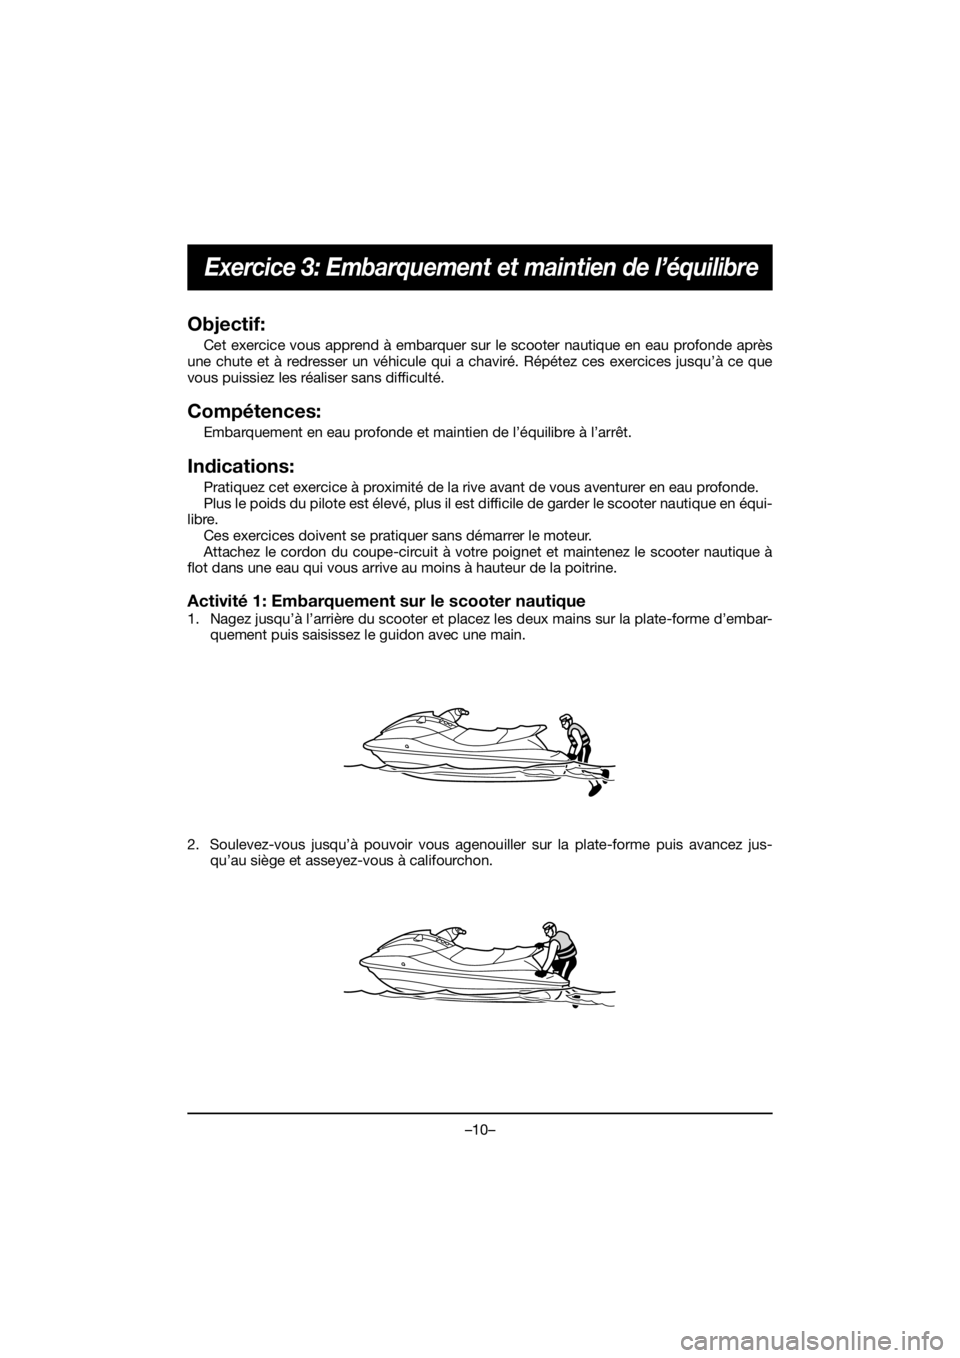 YAMAHA EX SPORT 2019  Manuale de Empleo (in Spanish) –10–
Exercice 3: Embarquement et maintien de l’équilibre
Objectif:
Cet exercice vous apprend à embarquer sur le scooter nautique en eau profonde après
une chute et à redresser un véhicule q